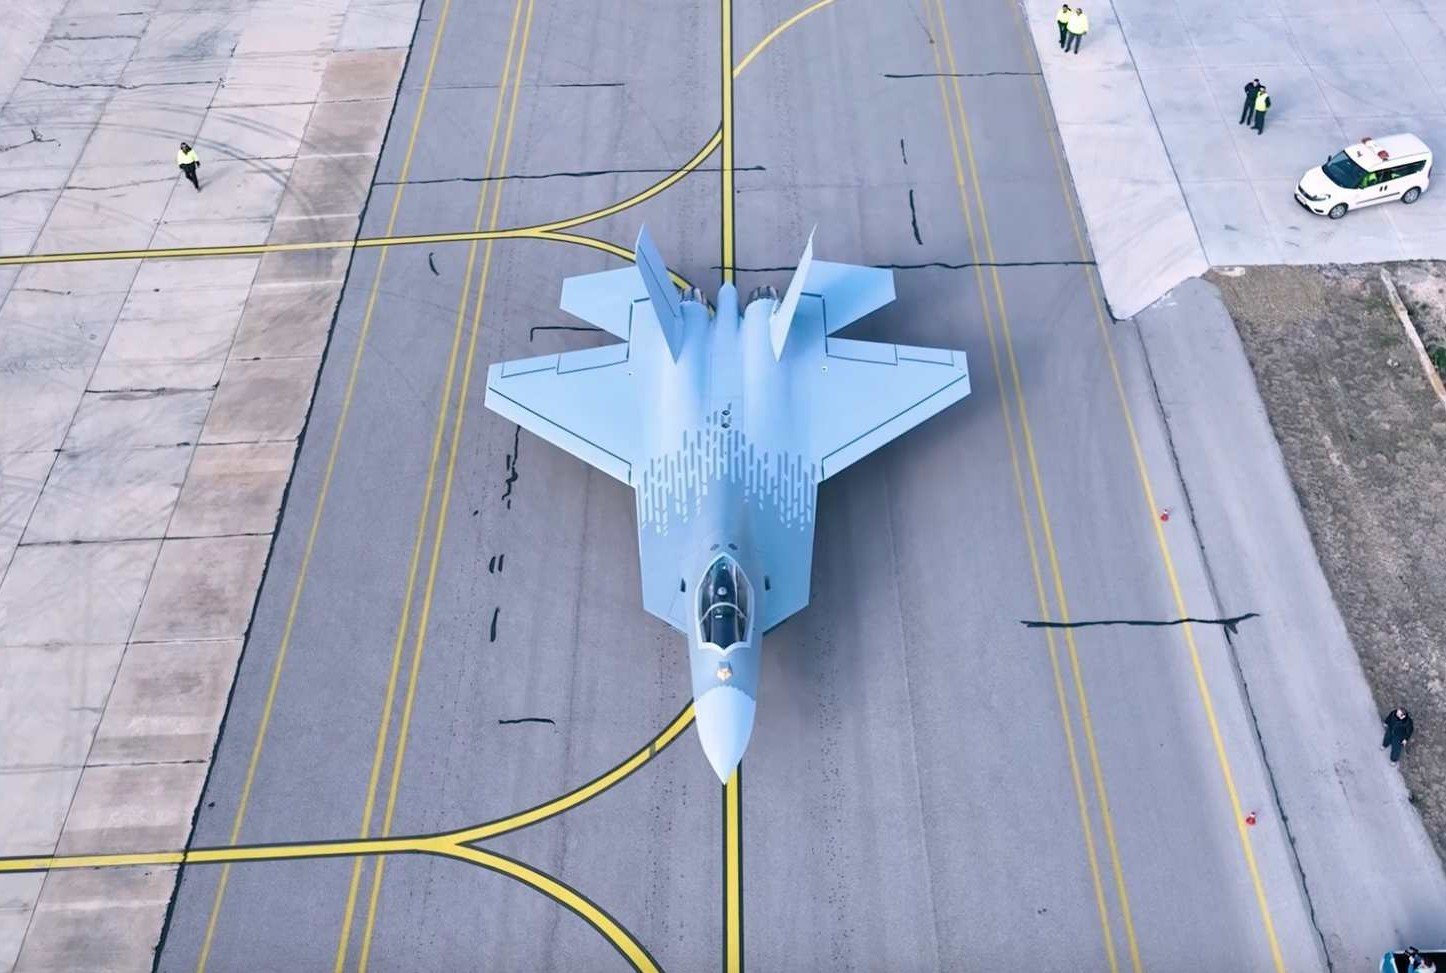 Mỹ chi 16 tỉ USD phát triển chiến đấu cơ thay thế cho F-22